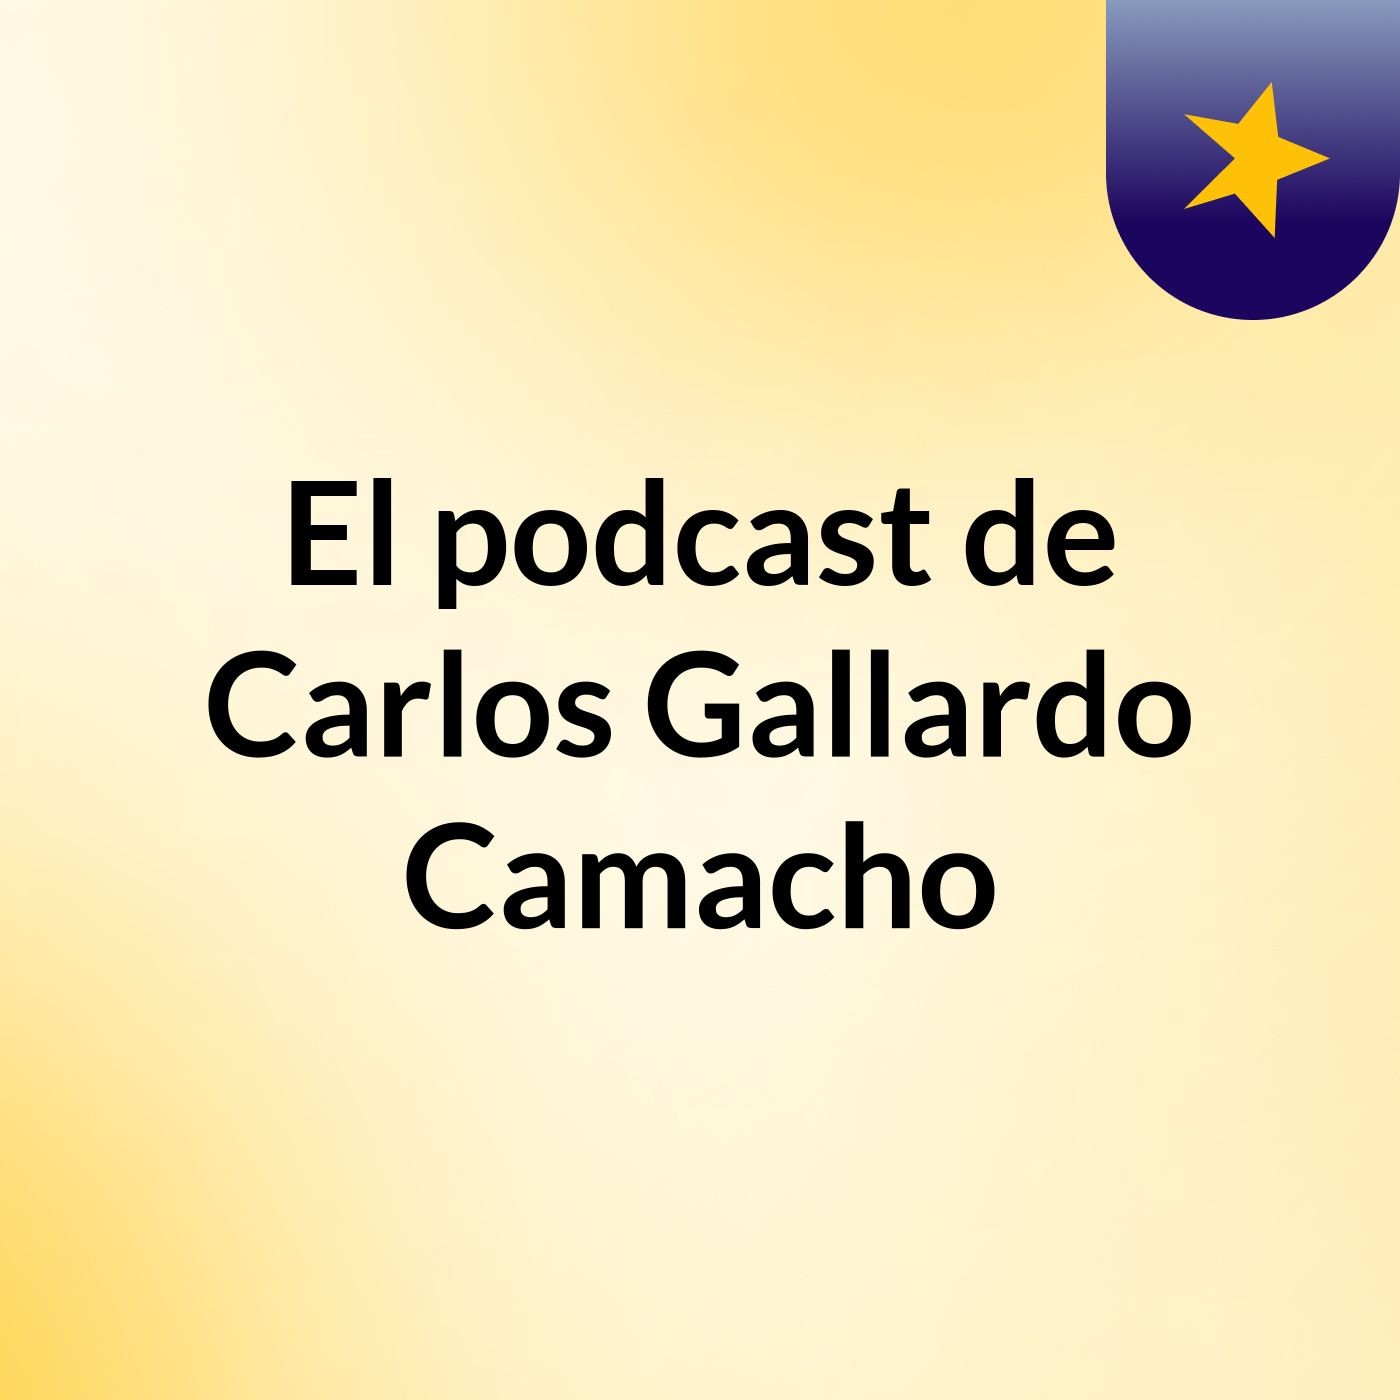 Episodio 6 - El podcast de Carlos Gallardo Camacho